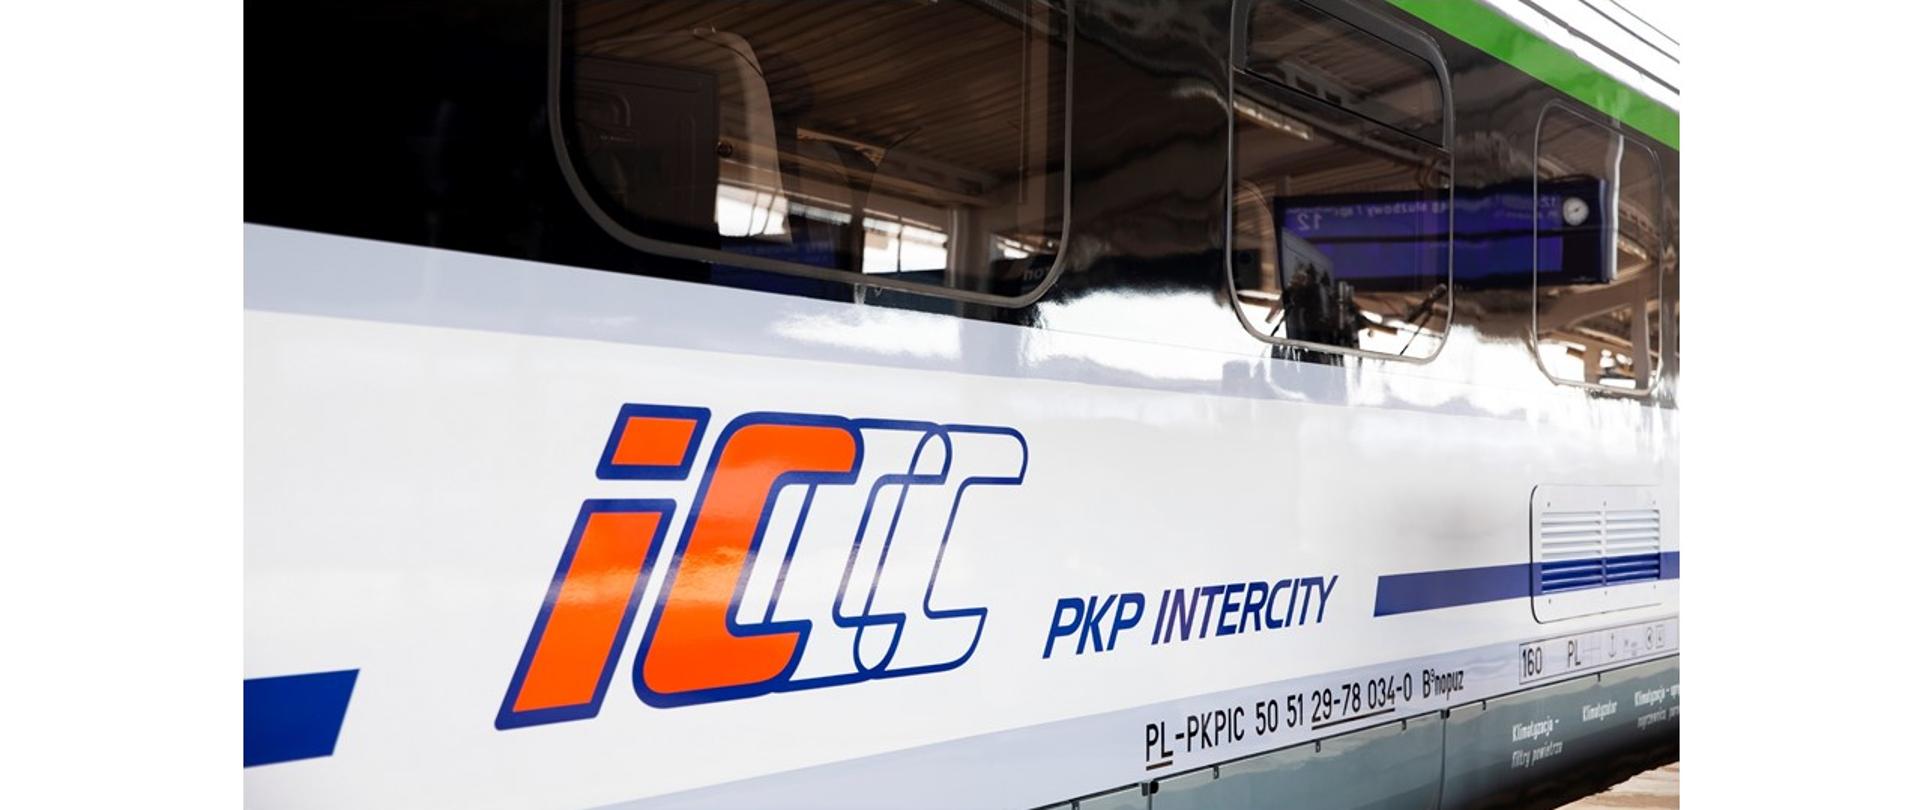 Spółka PKP Intercity podpisała umowę na modernizację 125 wagonów